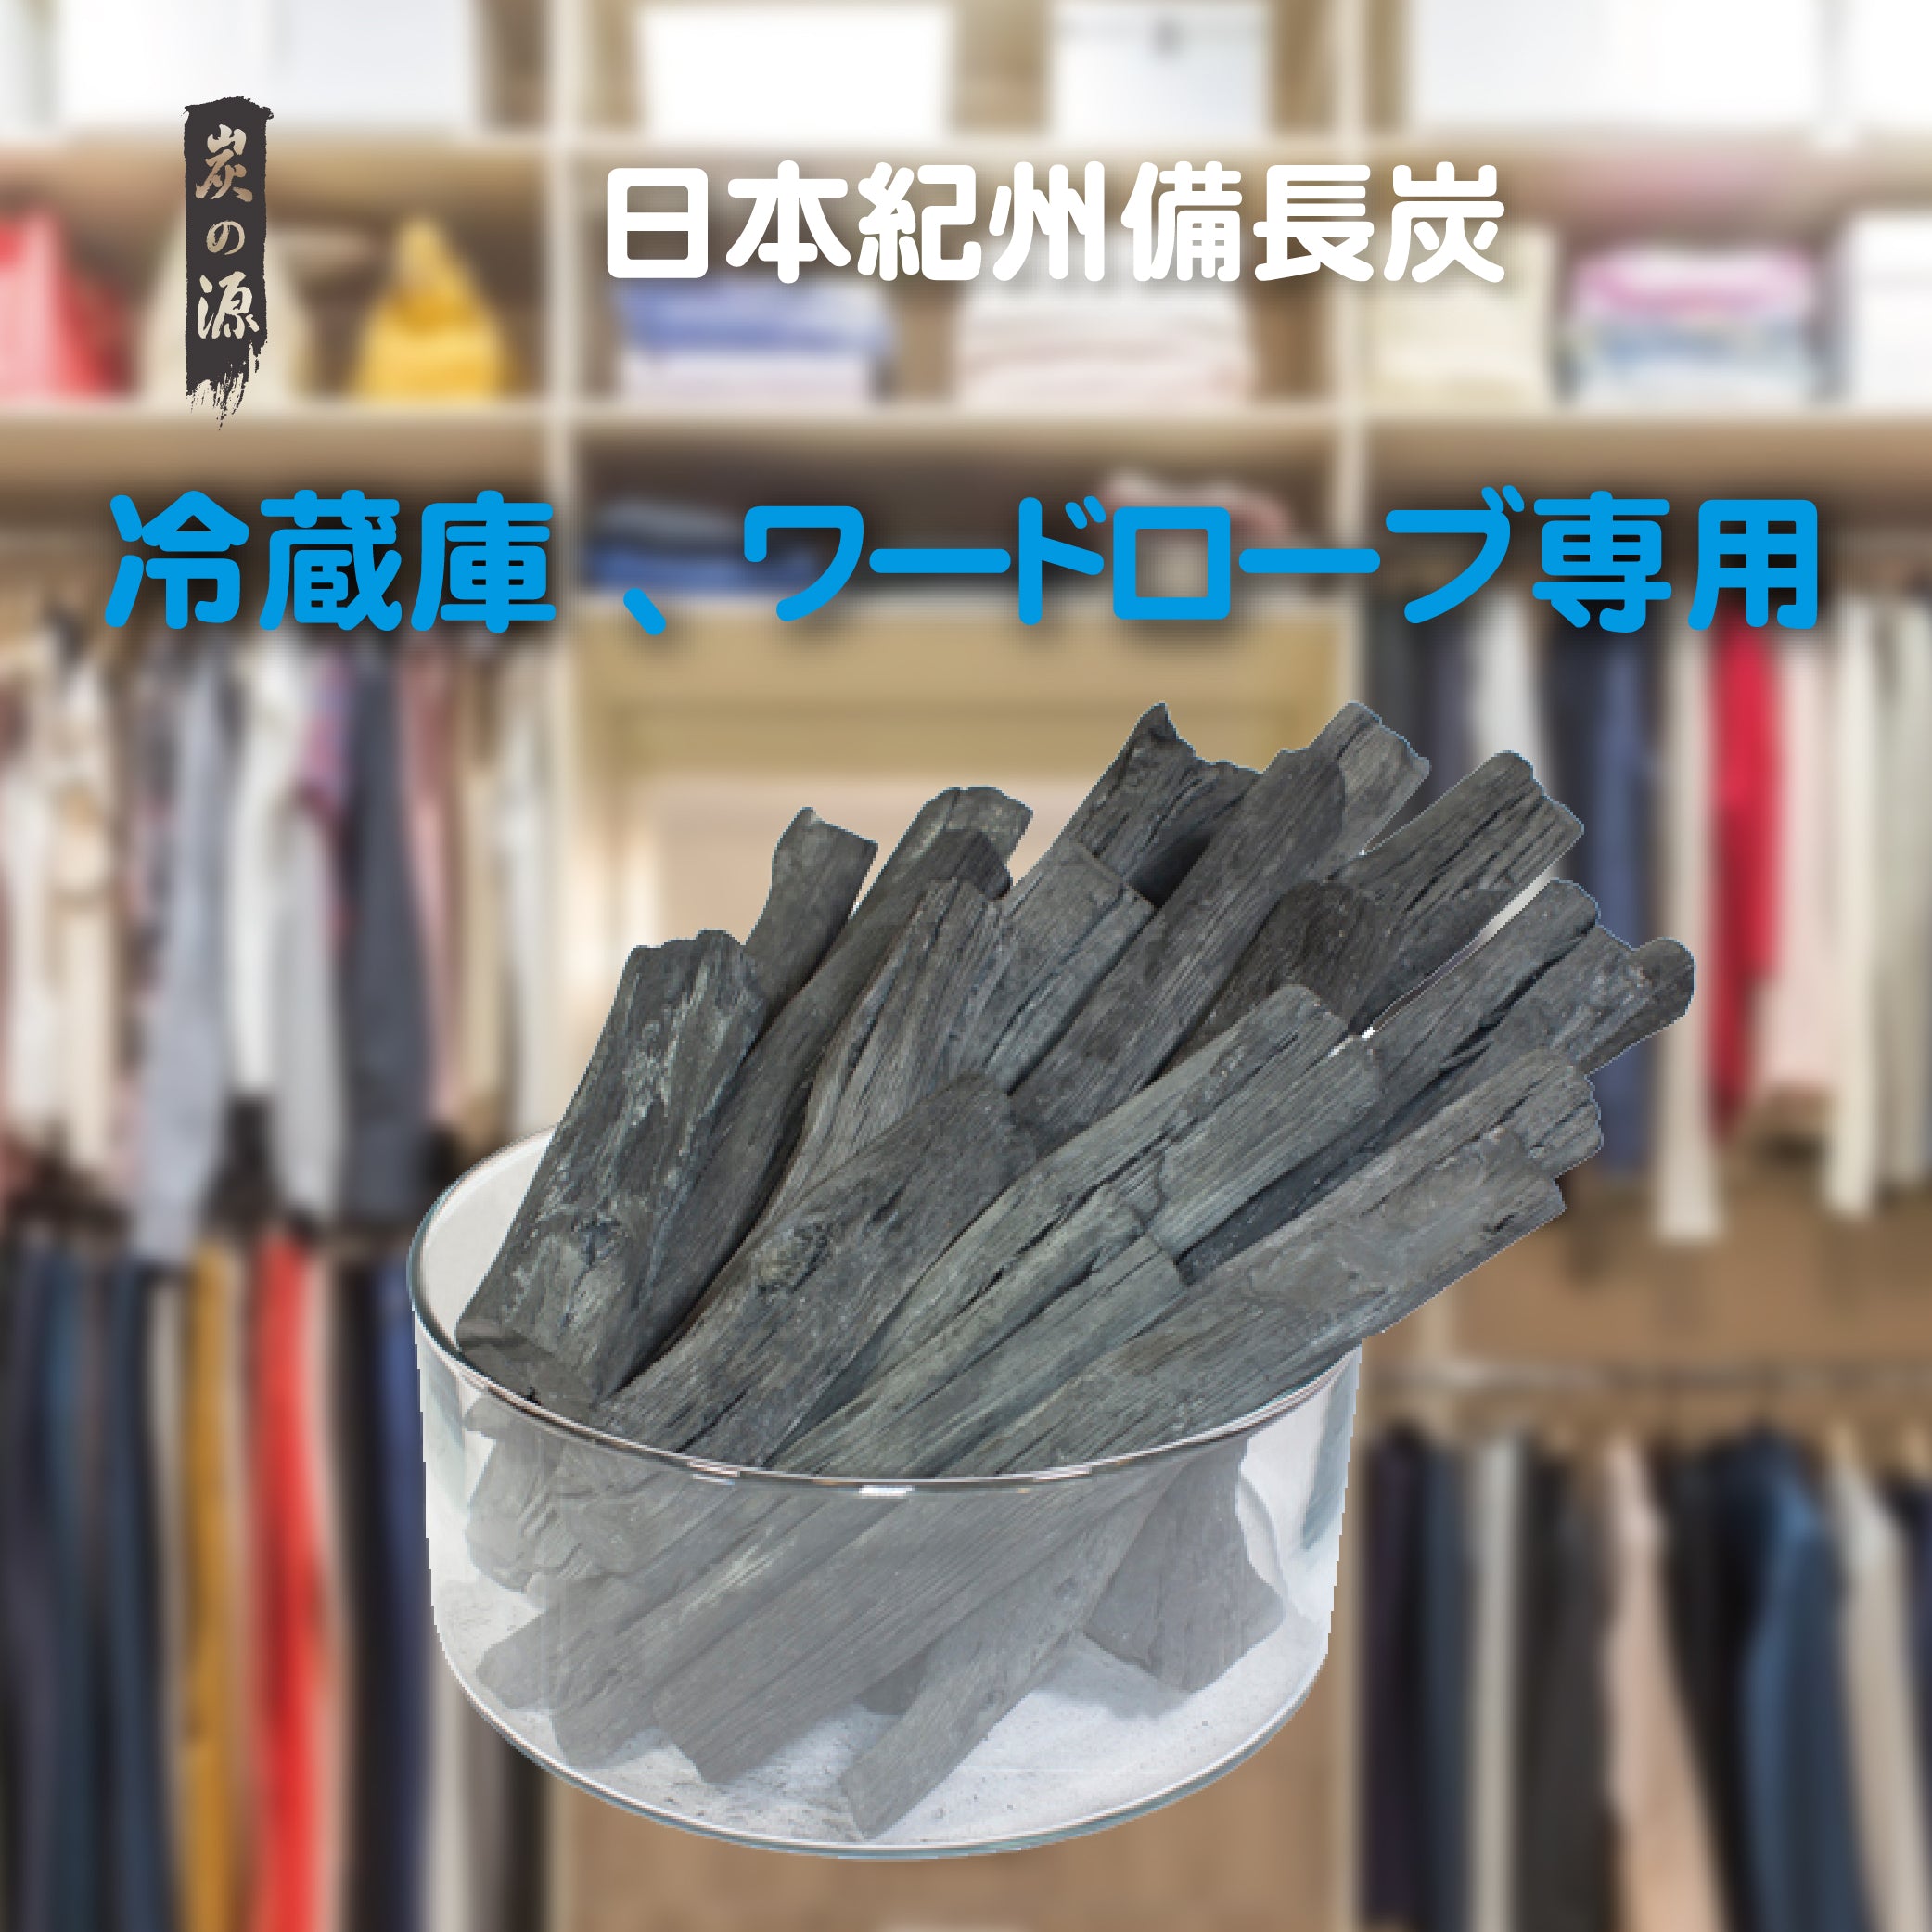 炭之源- 吸濕除臭好幫手- 鞋櫃/ 雪櫃用日本備長炭- 原條淨能木炭500g